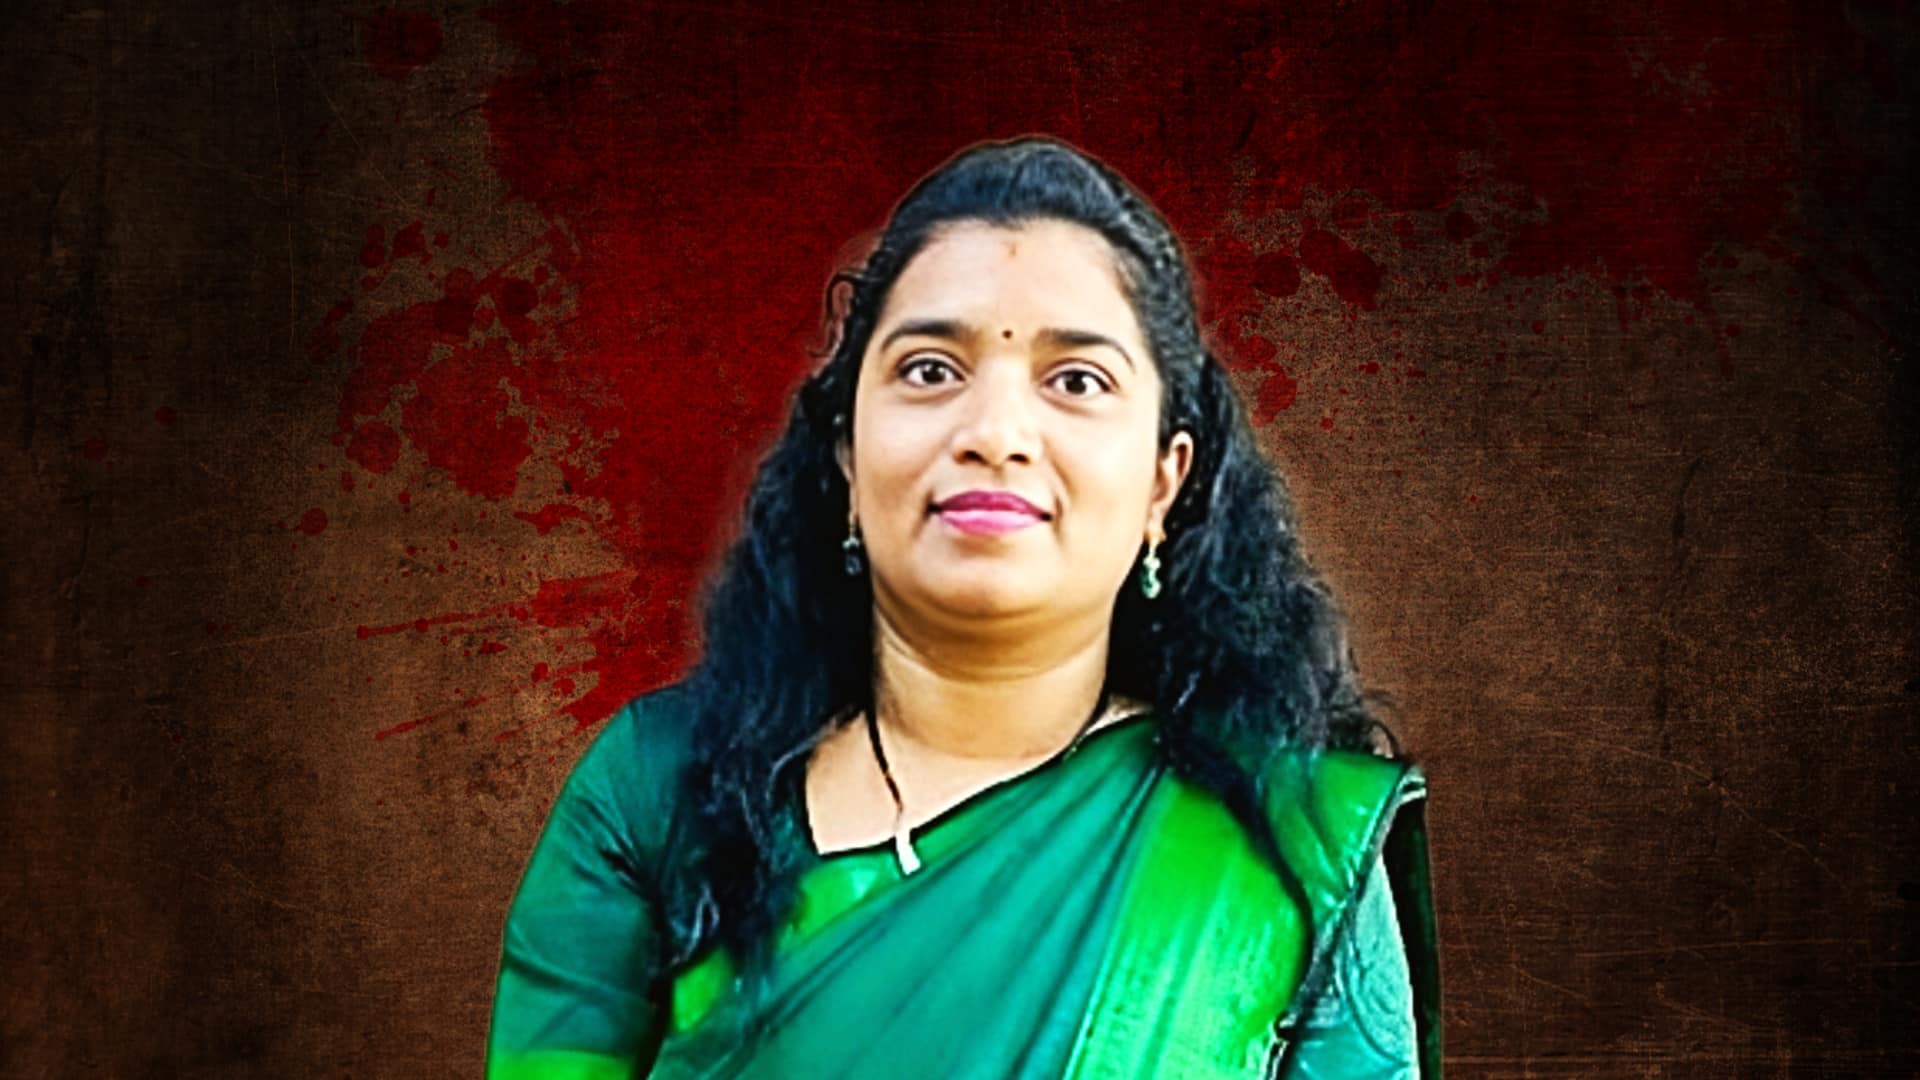 कर्नाटक: महिला भूवैज्ञानिक की हत्या के आरोप में उनका चालक गिरफ्तार, जानें क्यों की वारदात